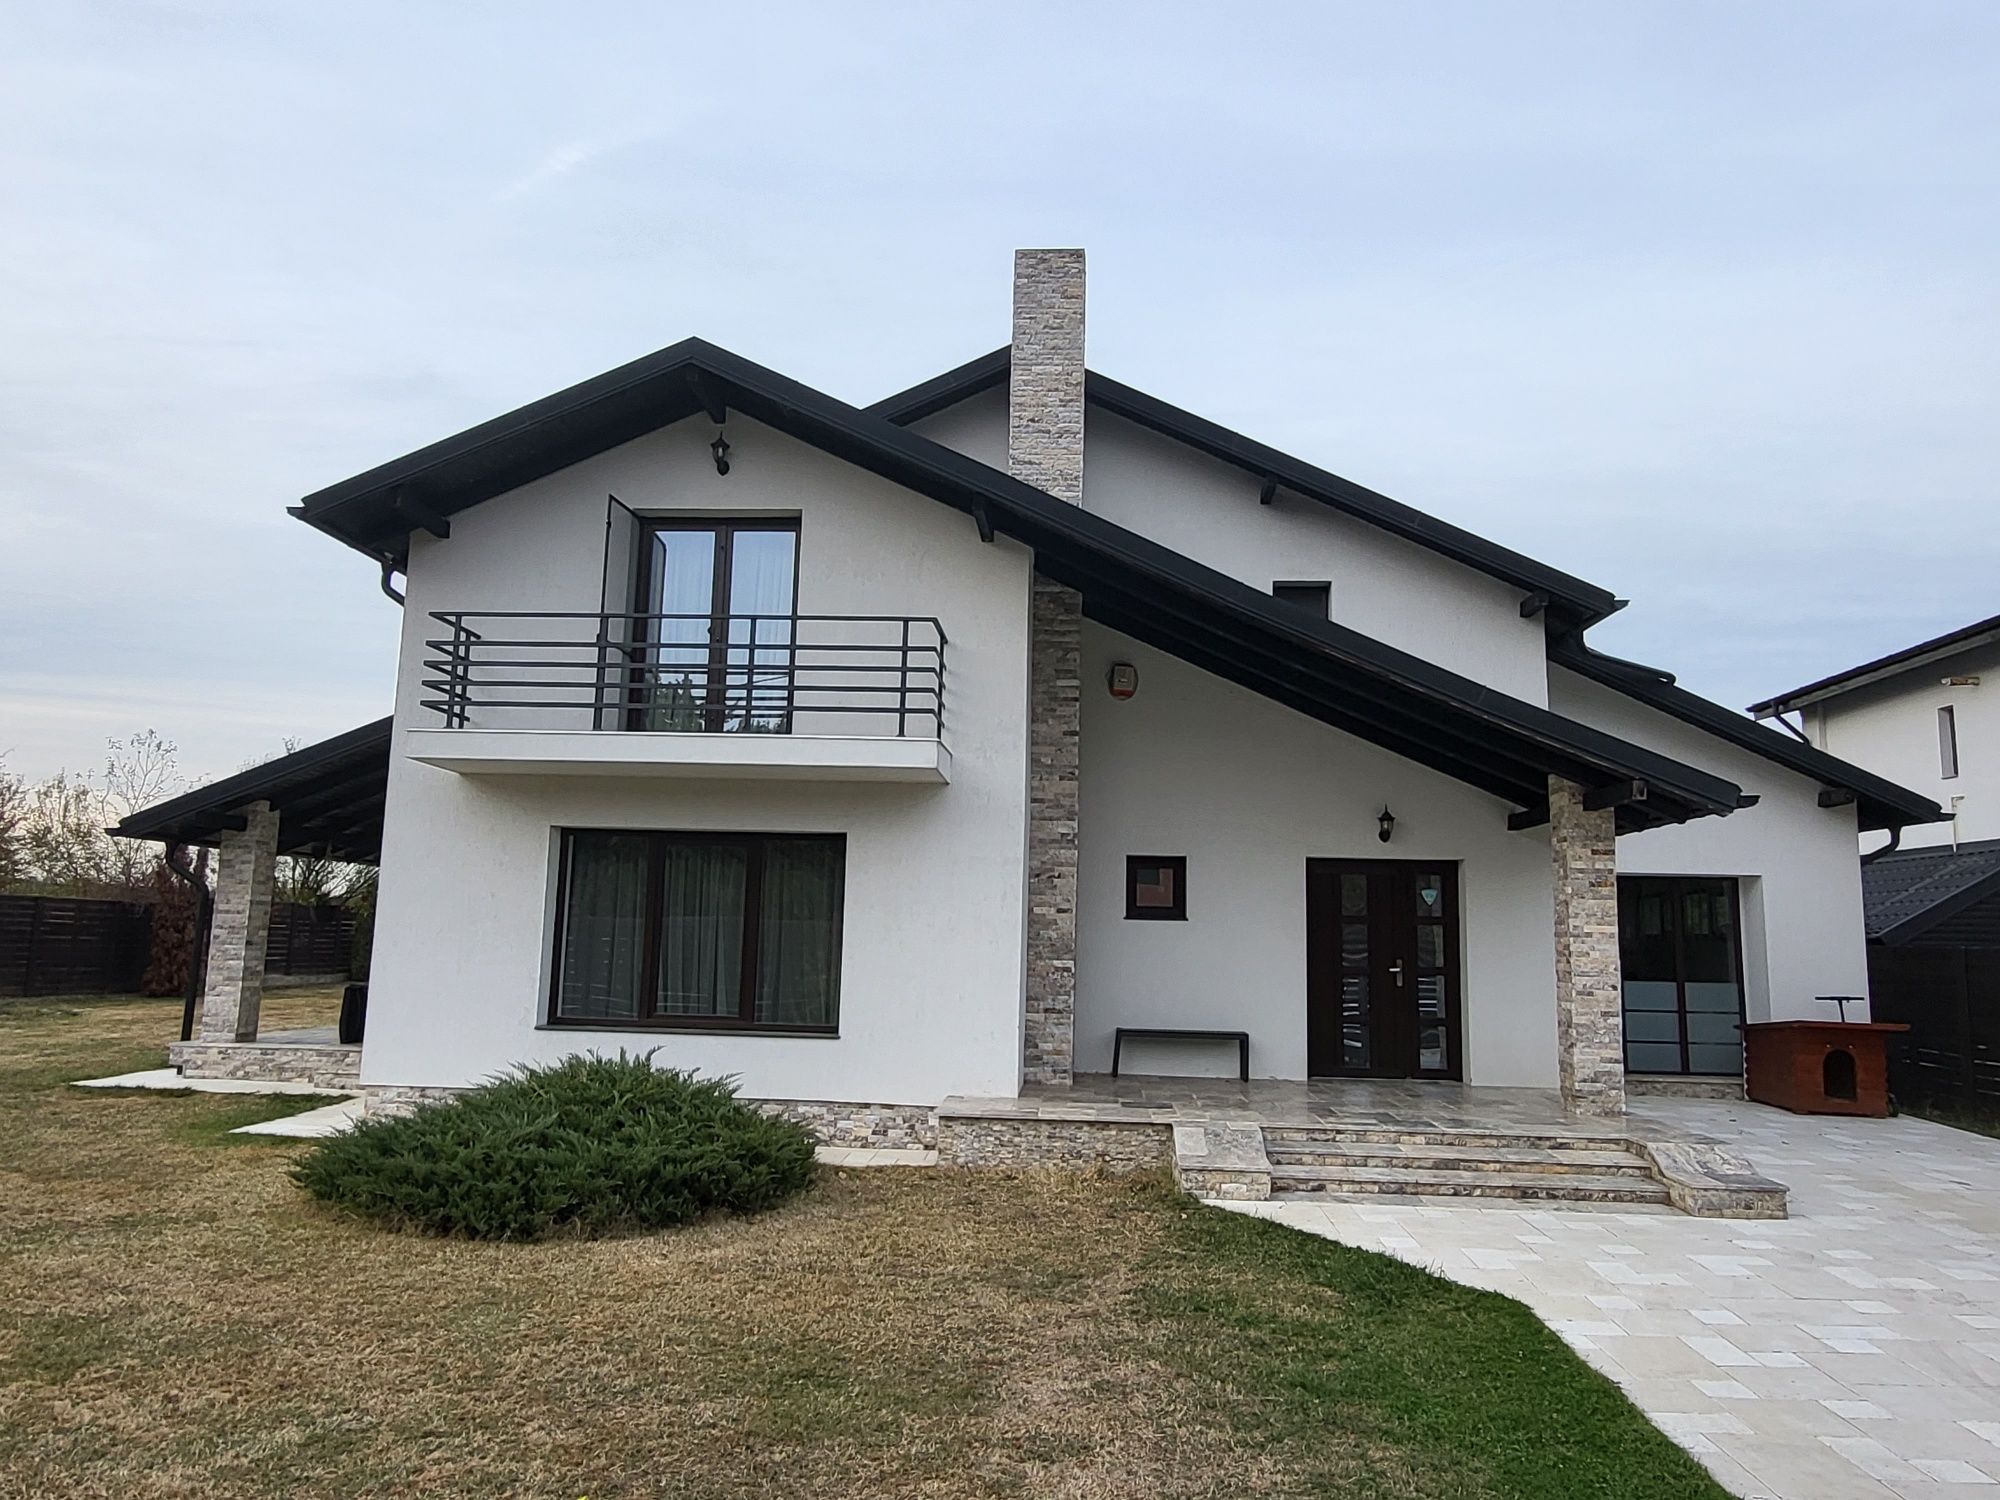 De vânzare casă P+1, 180 mp, teren 1000mp, Bascov-Glâmbocu-deal